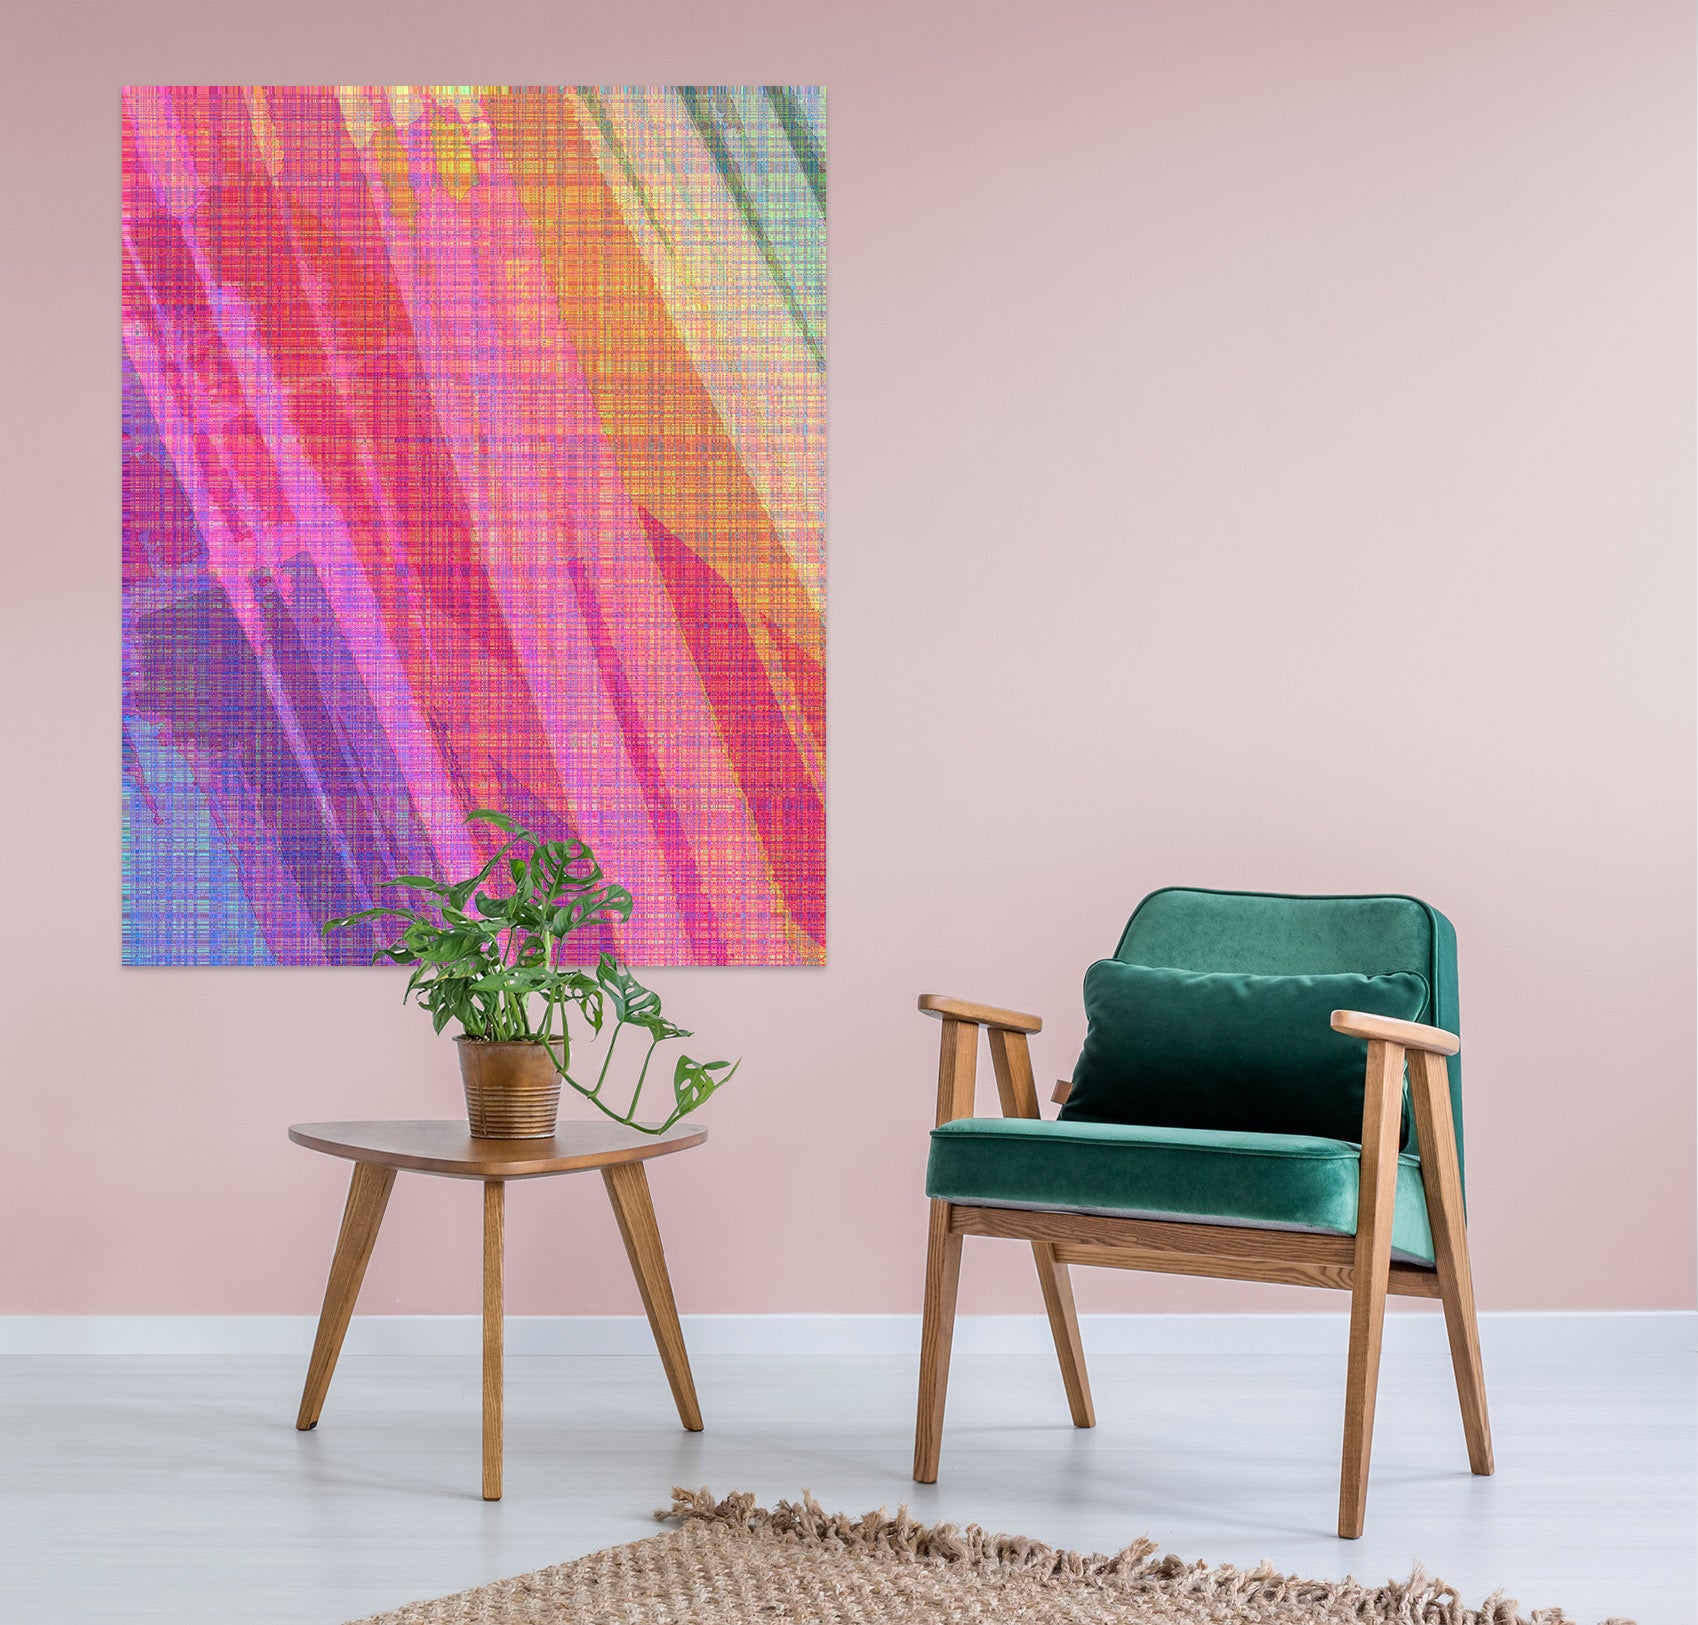 3D Abstract Rainbow 70157 Shandra Smith Wall Sticker